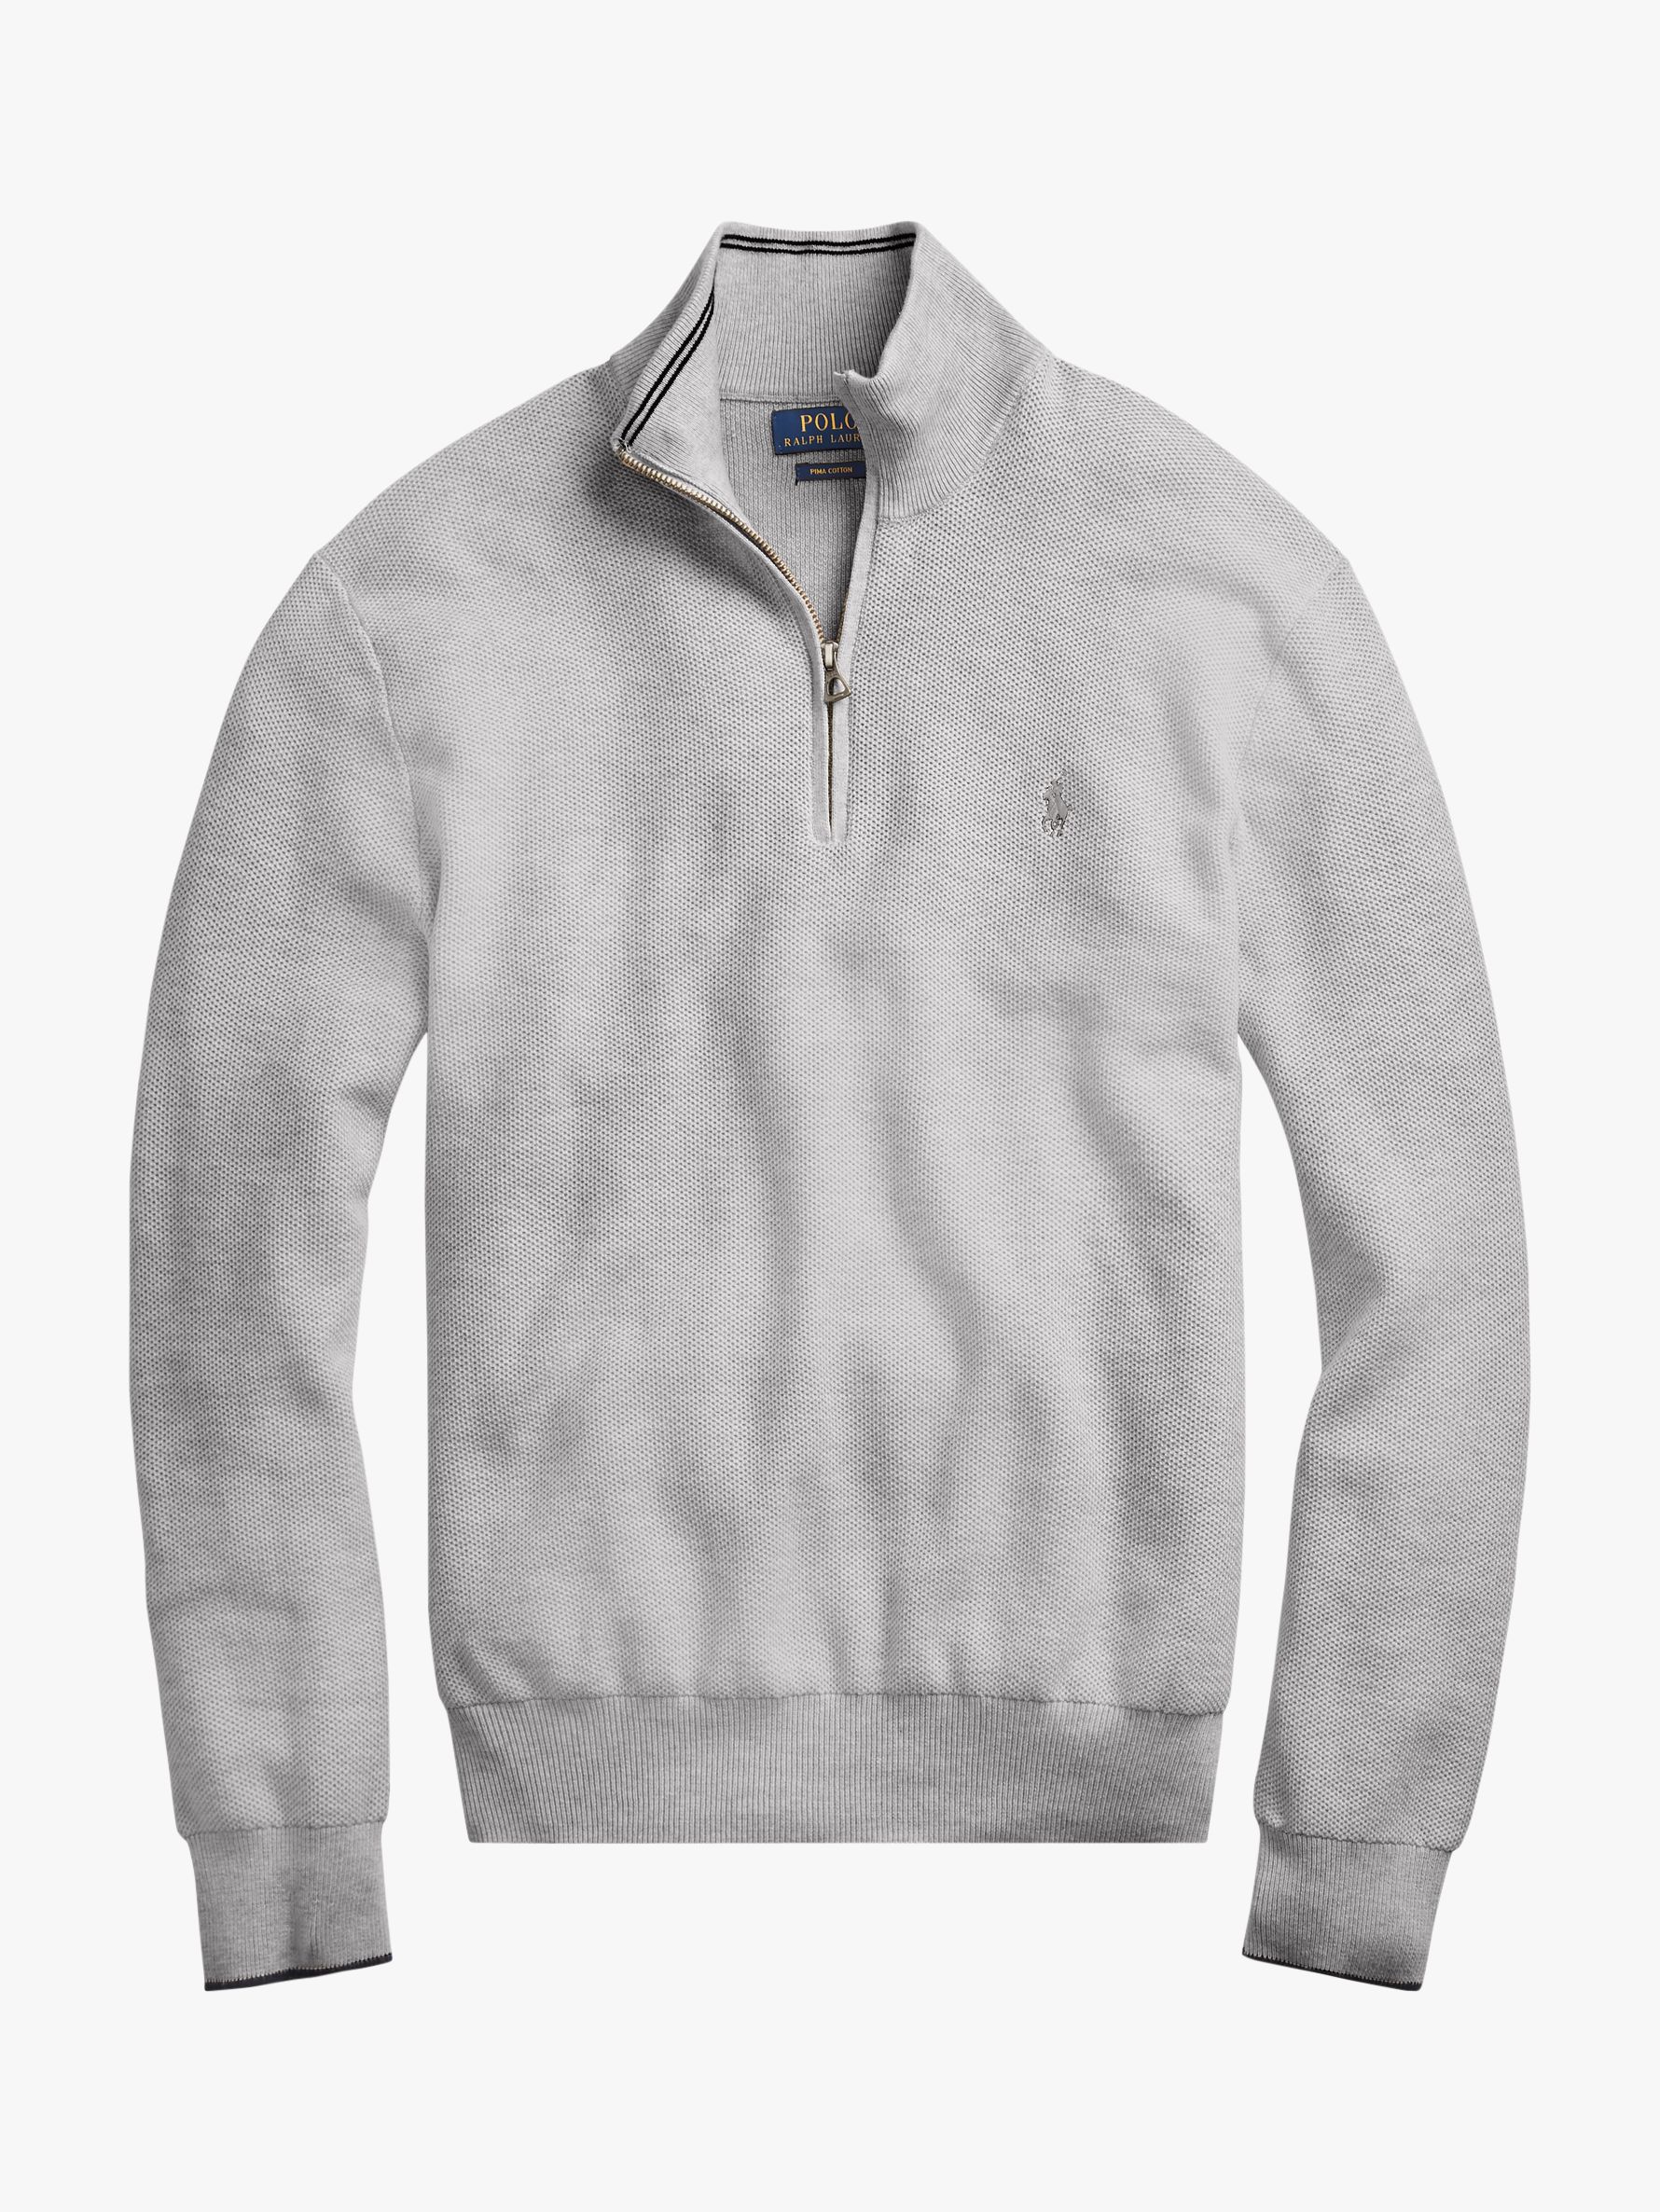 Polo Ralph Lauren Pima Cotton Half Zip Sweatshirt, Andover Heather, M